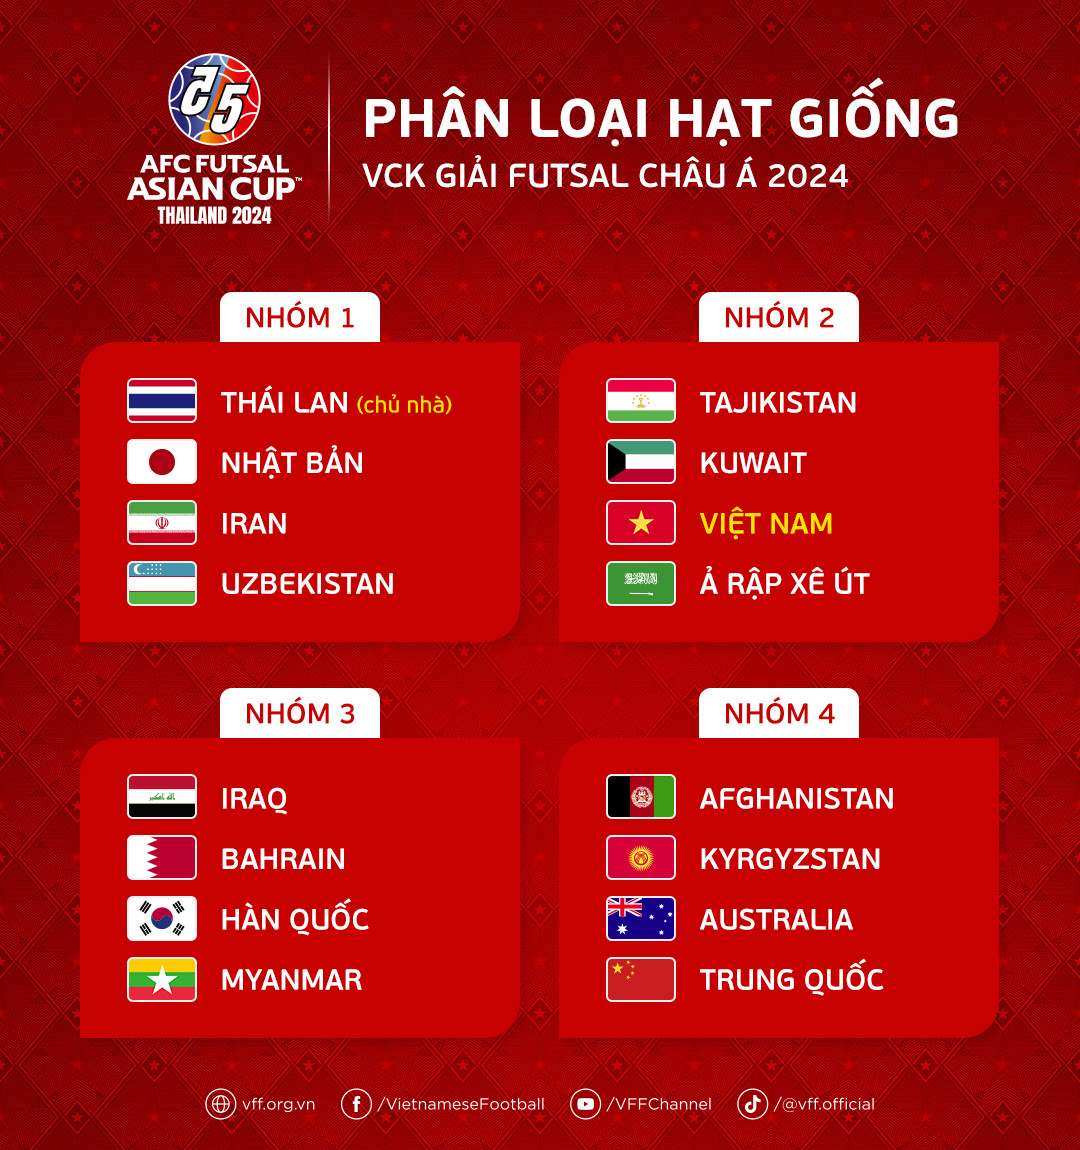 Tuyển futsal Việt Nam nằm ở nhóm 2 ở Giải futsal châu Á 2024. Ảnh: VFF